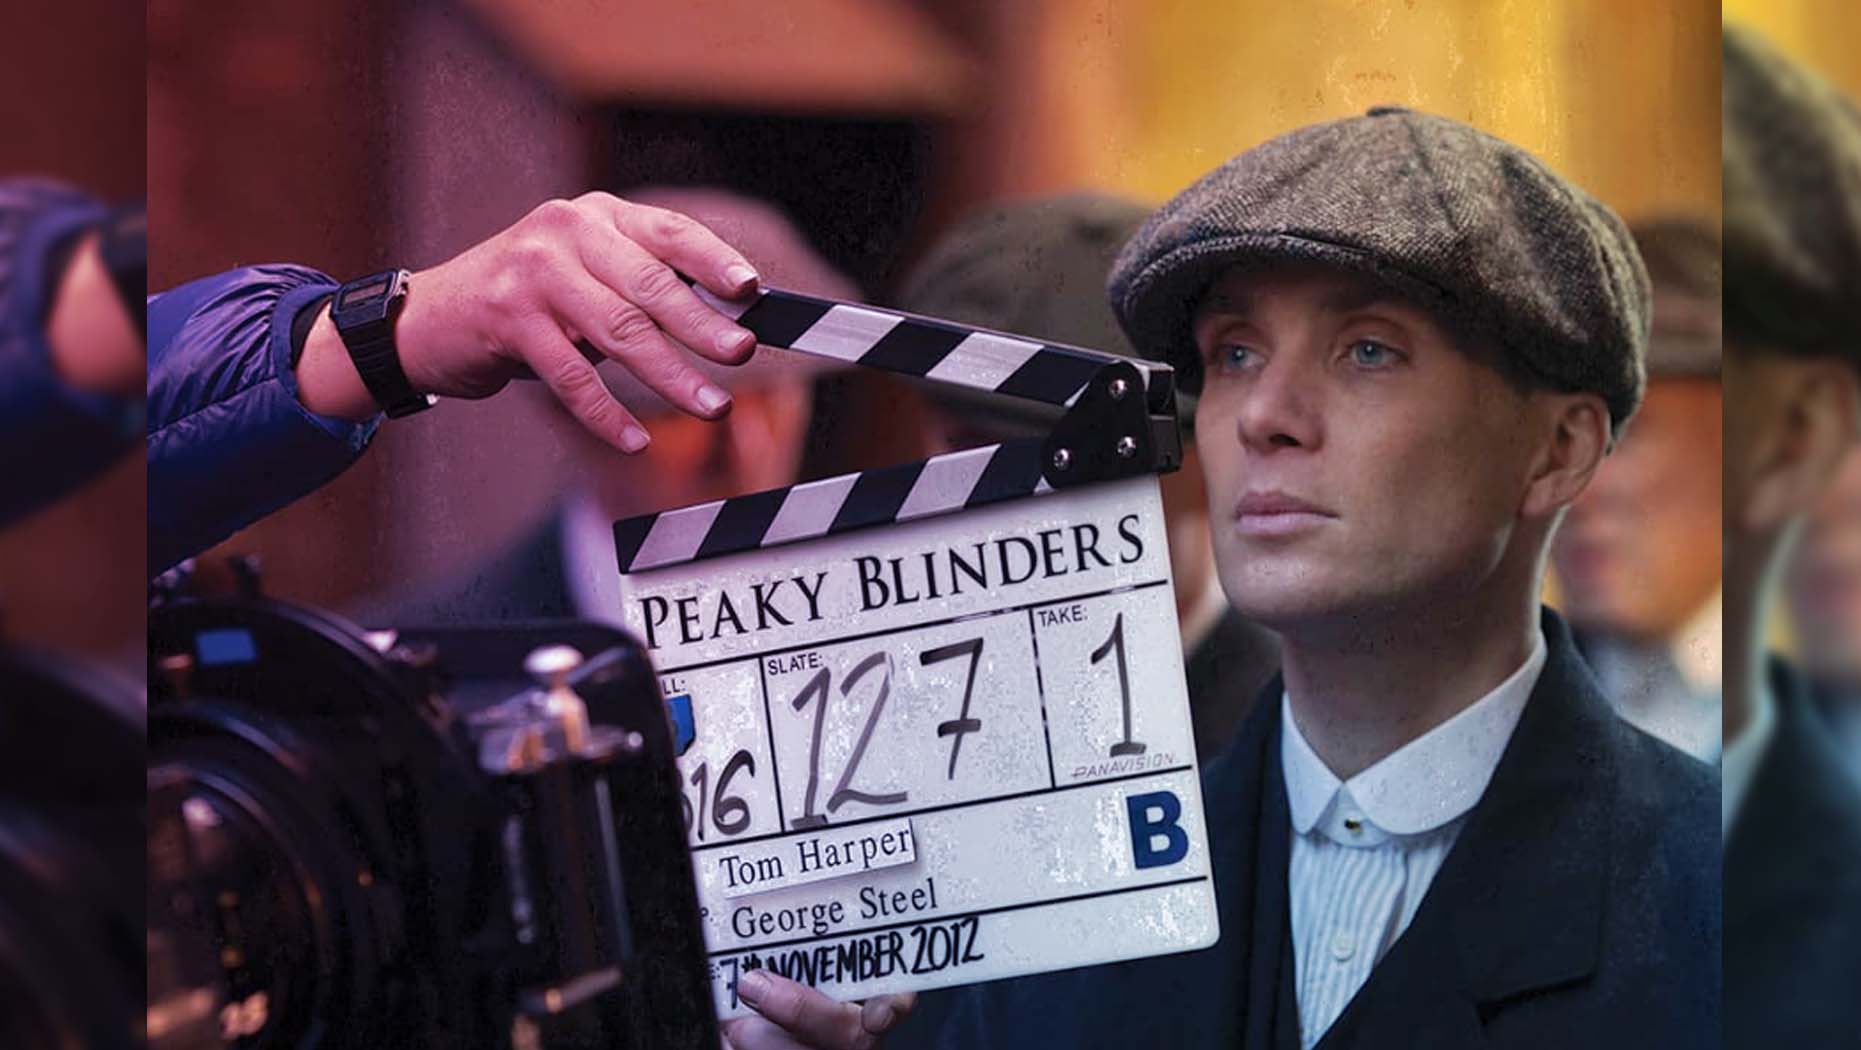 Peaky Blinders season 6 shooting